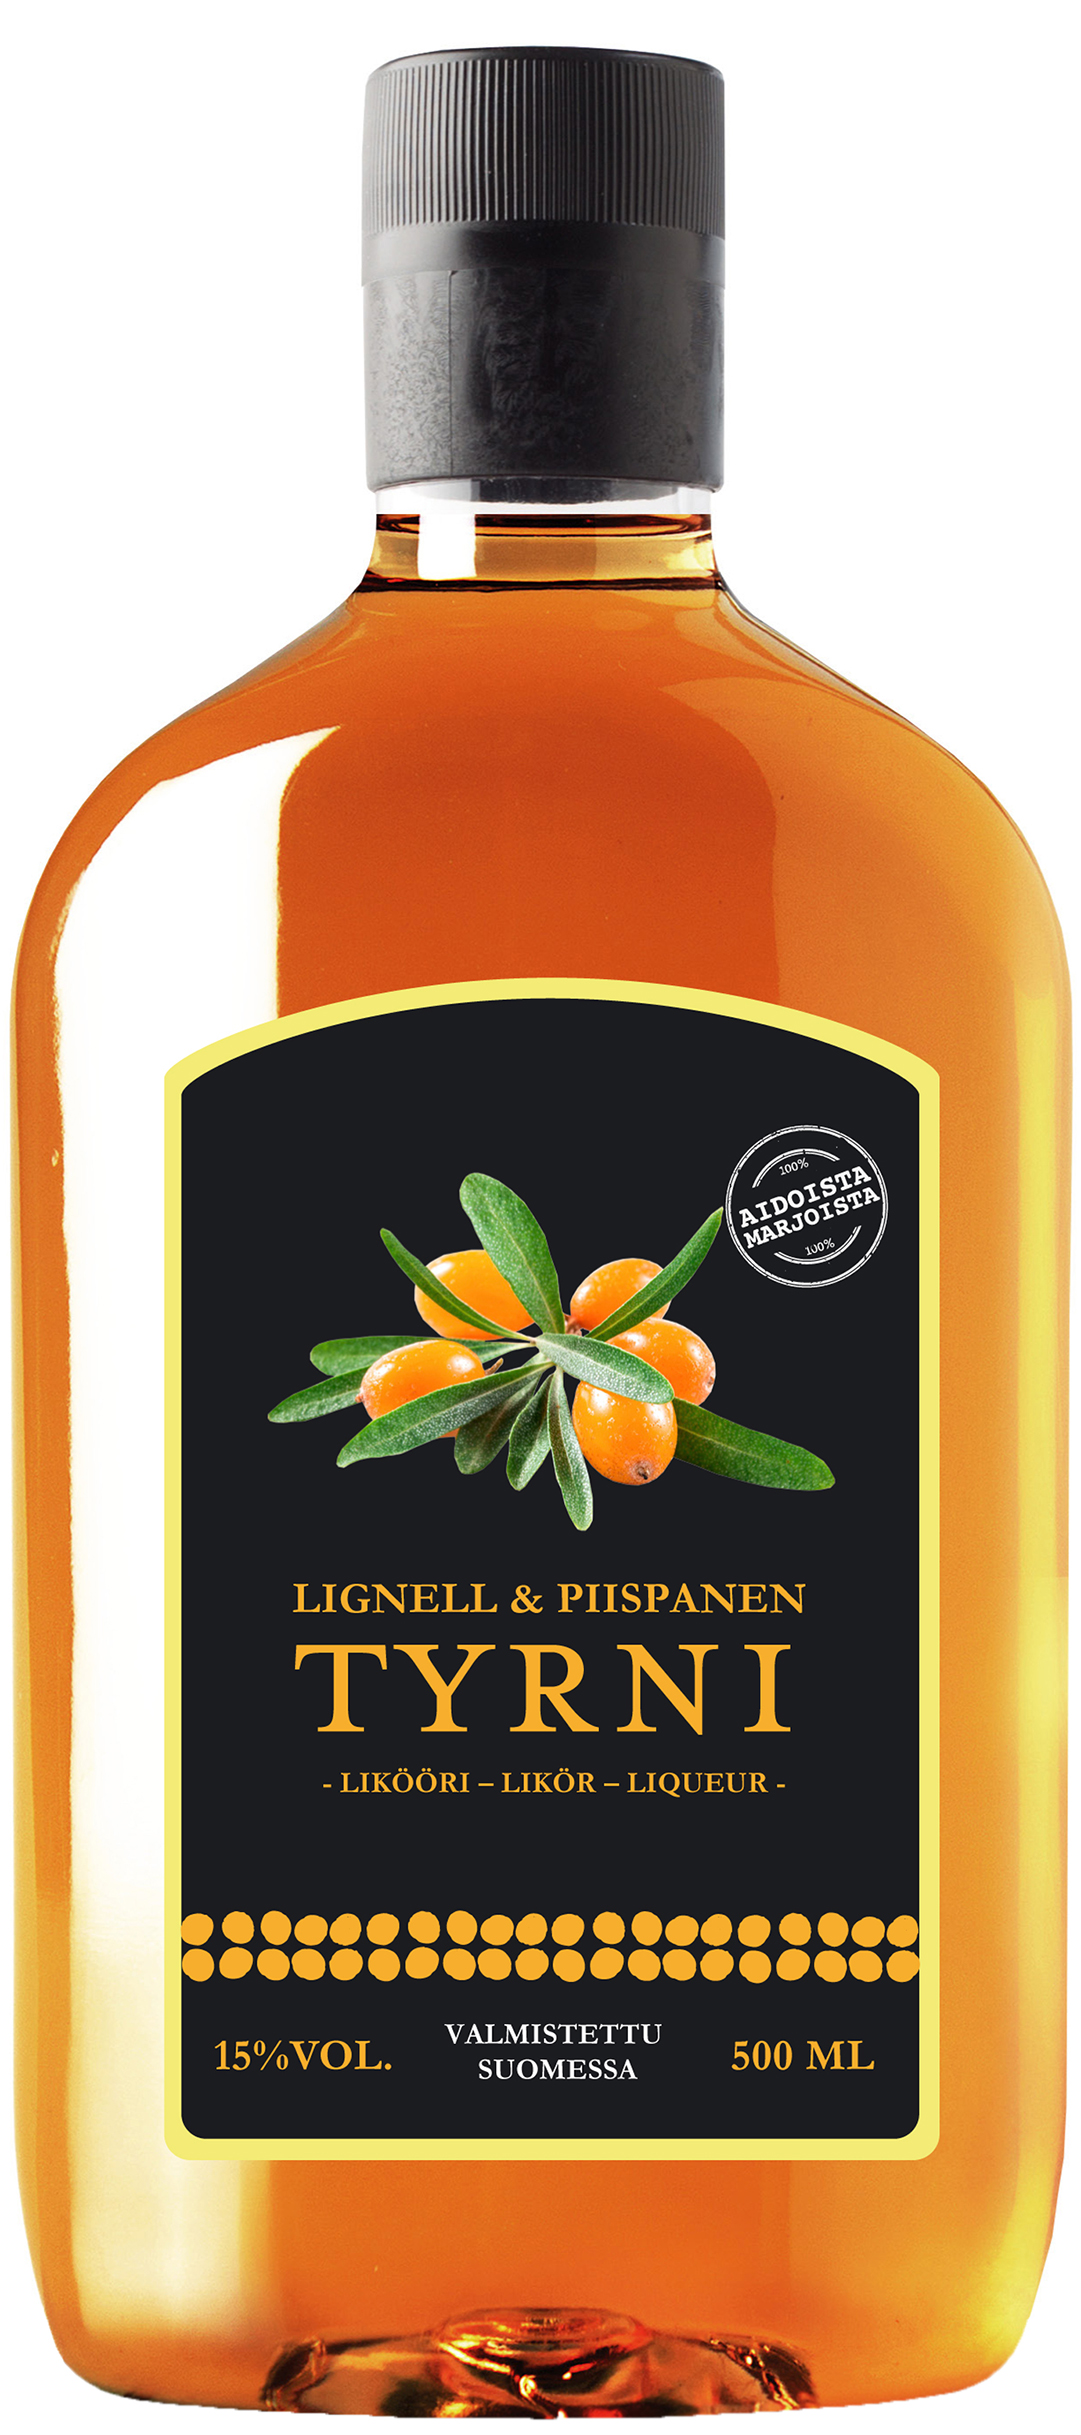 Lignell & Piispanen Tyrnilikööri plastic bottle